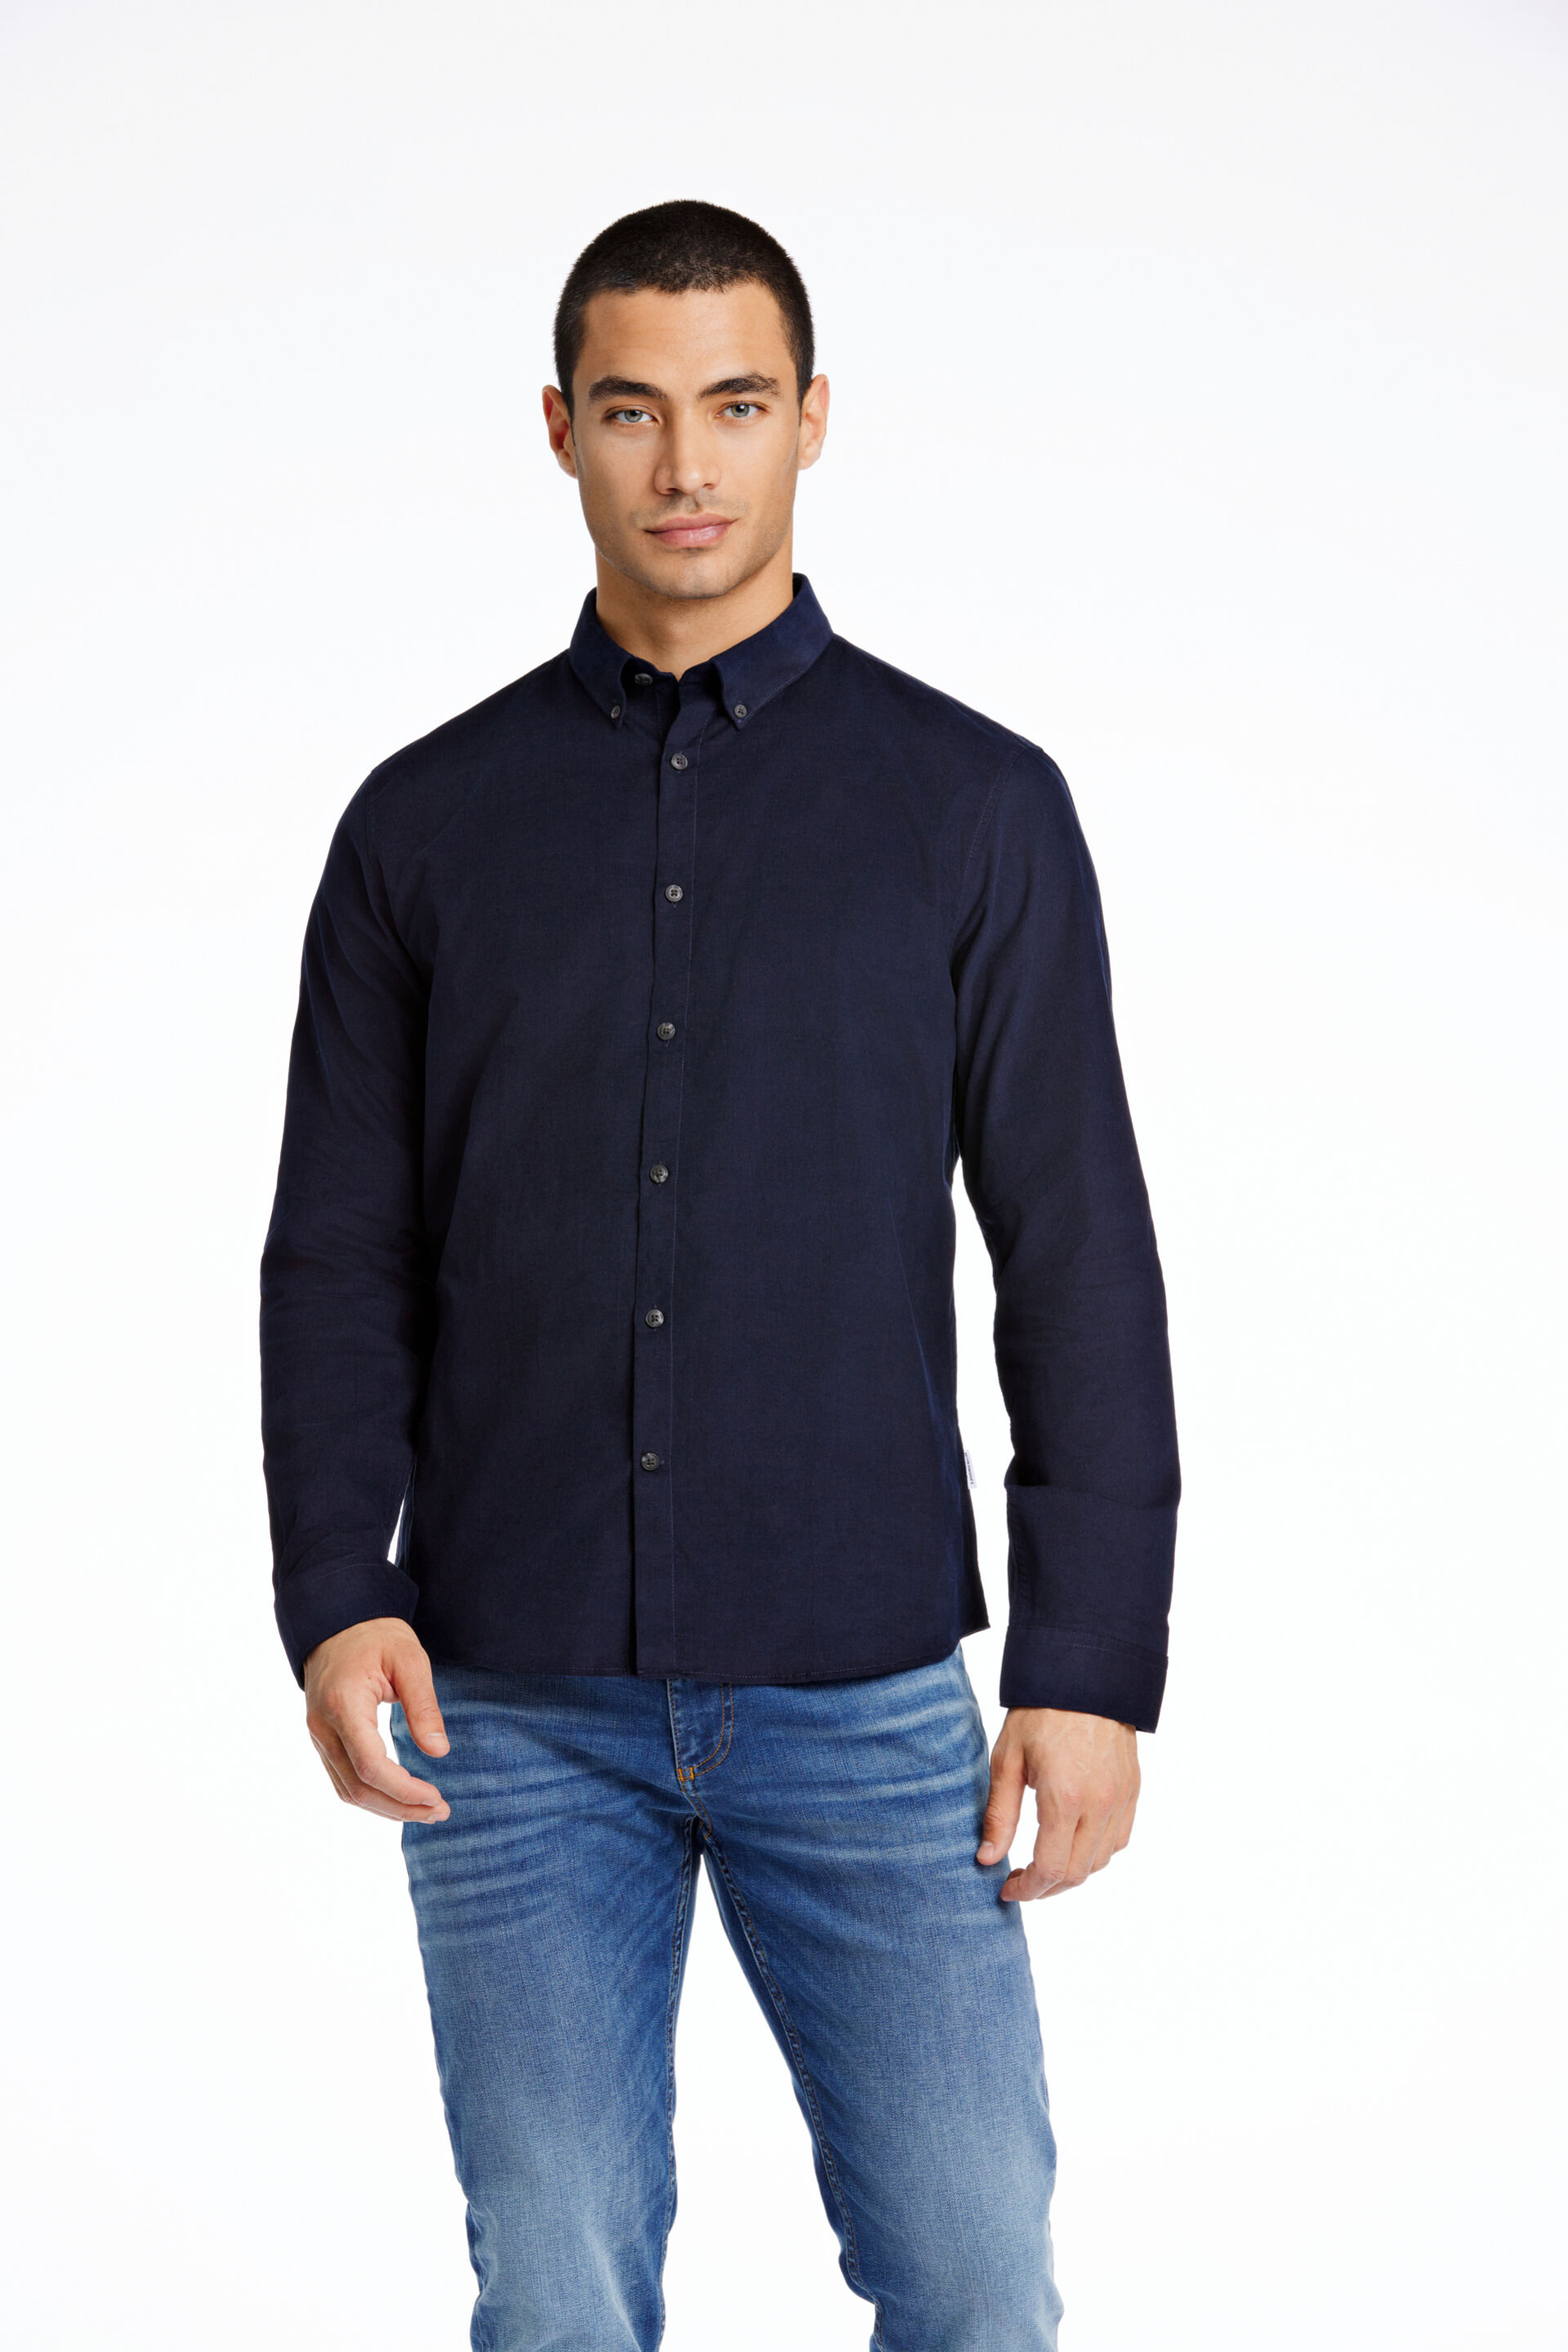 Fløjlsskjorte Fløjlsskjorte Blå 30-203248